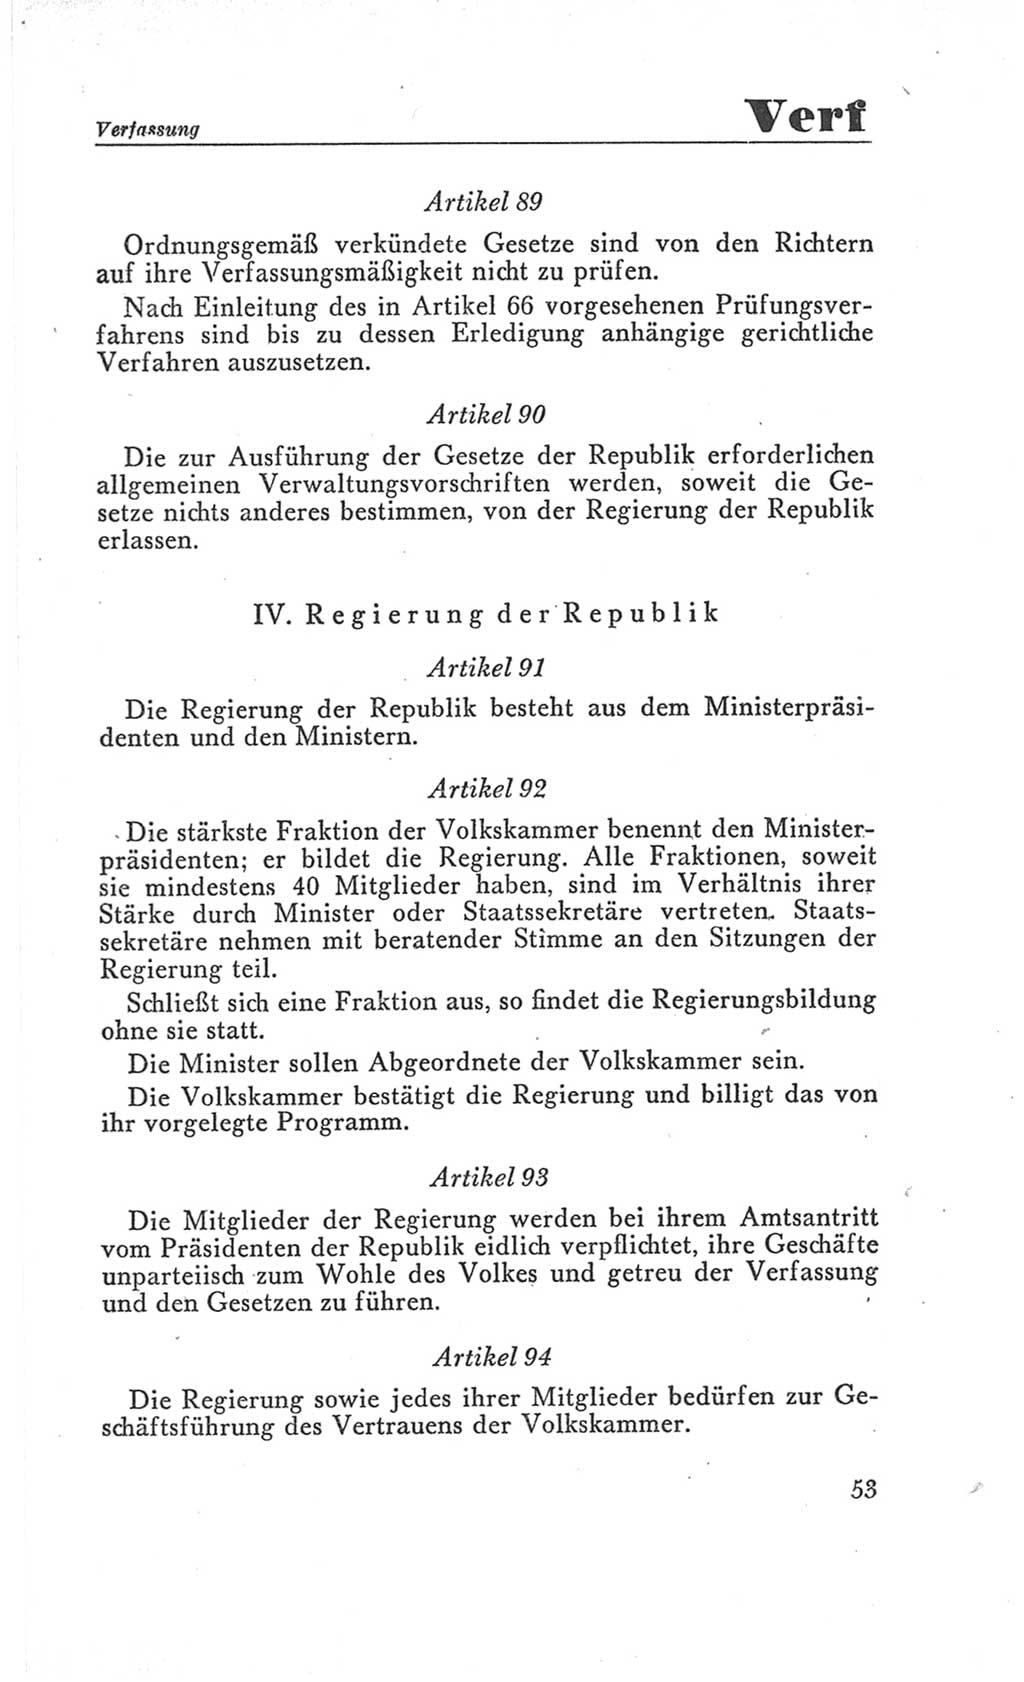 Handbuch der Volkskammer (VK) der Deutschen Demokratischen Republik (DDR), 3. Wahlperiode 1958-1963, Seite 53 (Hdb. VK. DDR 3. WP. 1958-1963, S. 53)